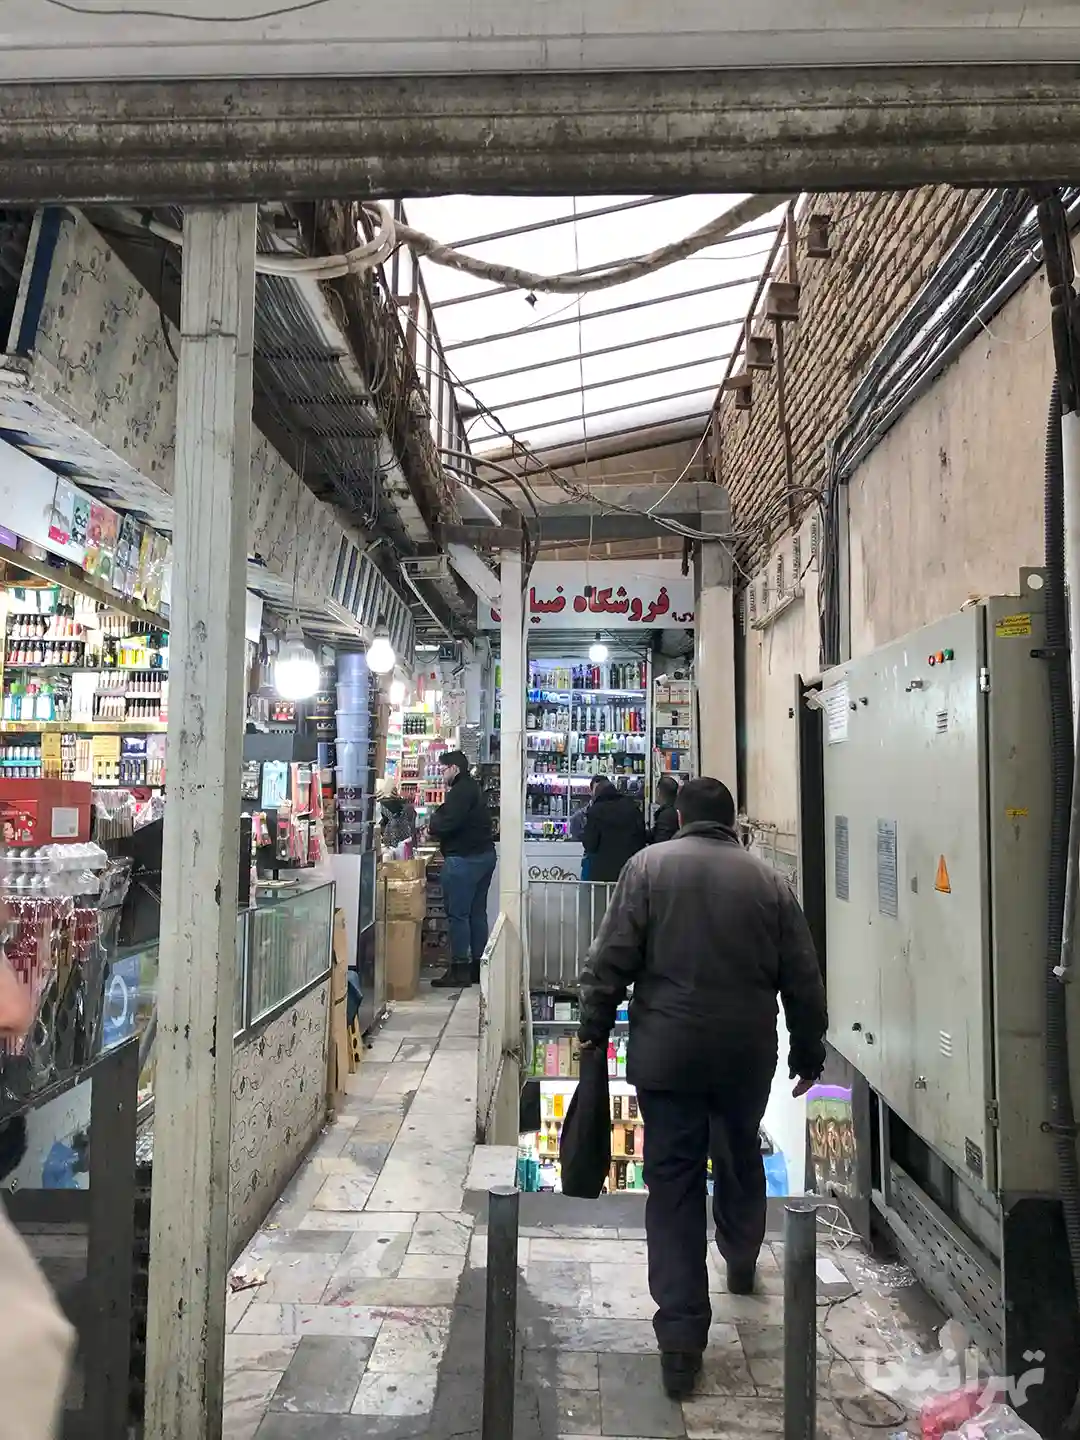 مردم در حال تردد و خرید در پاساژ المهدی شیخ رضای بازار